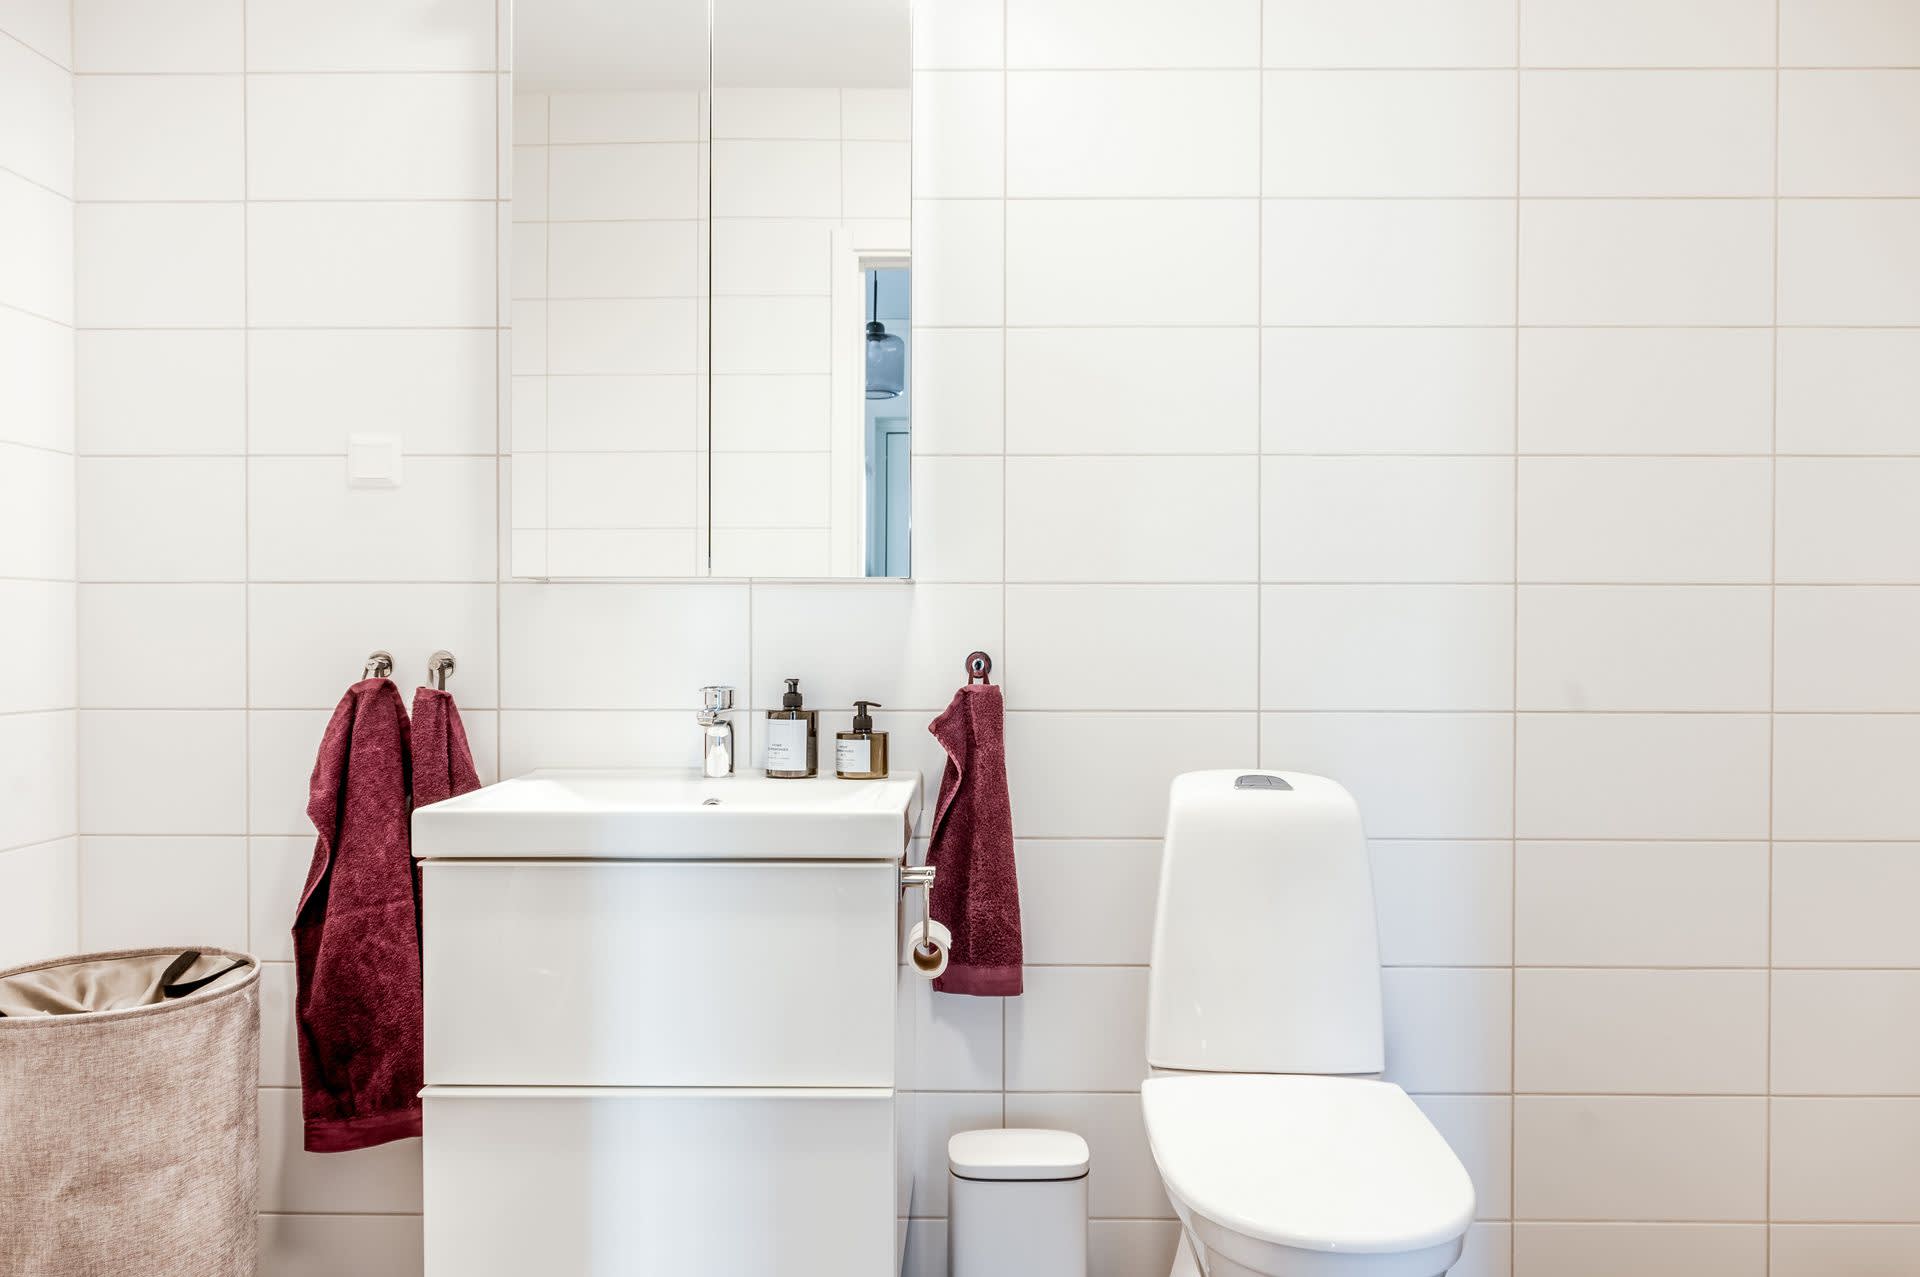 Plats att installera badkar i badrummet på entréplan.